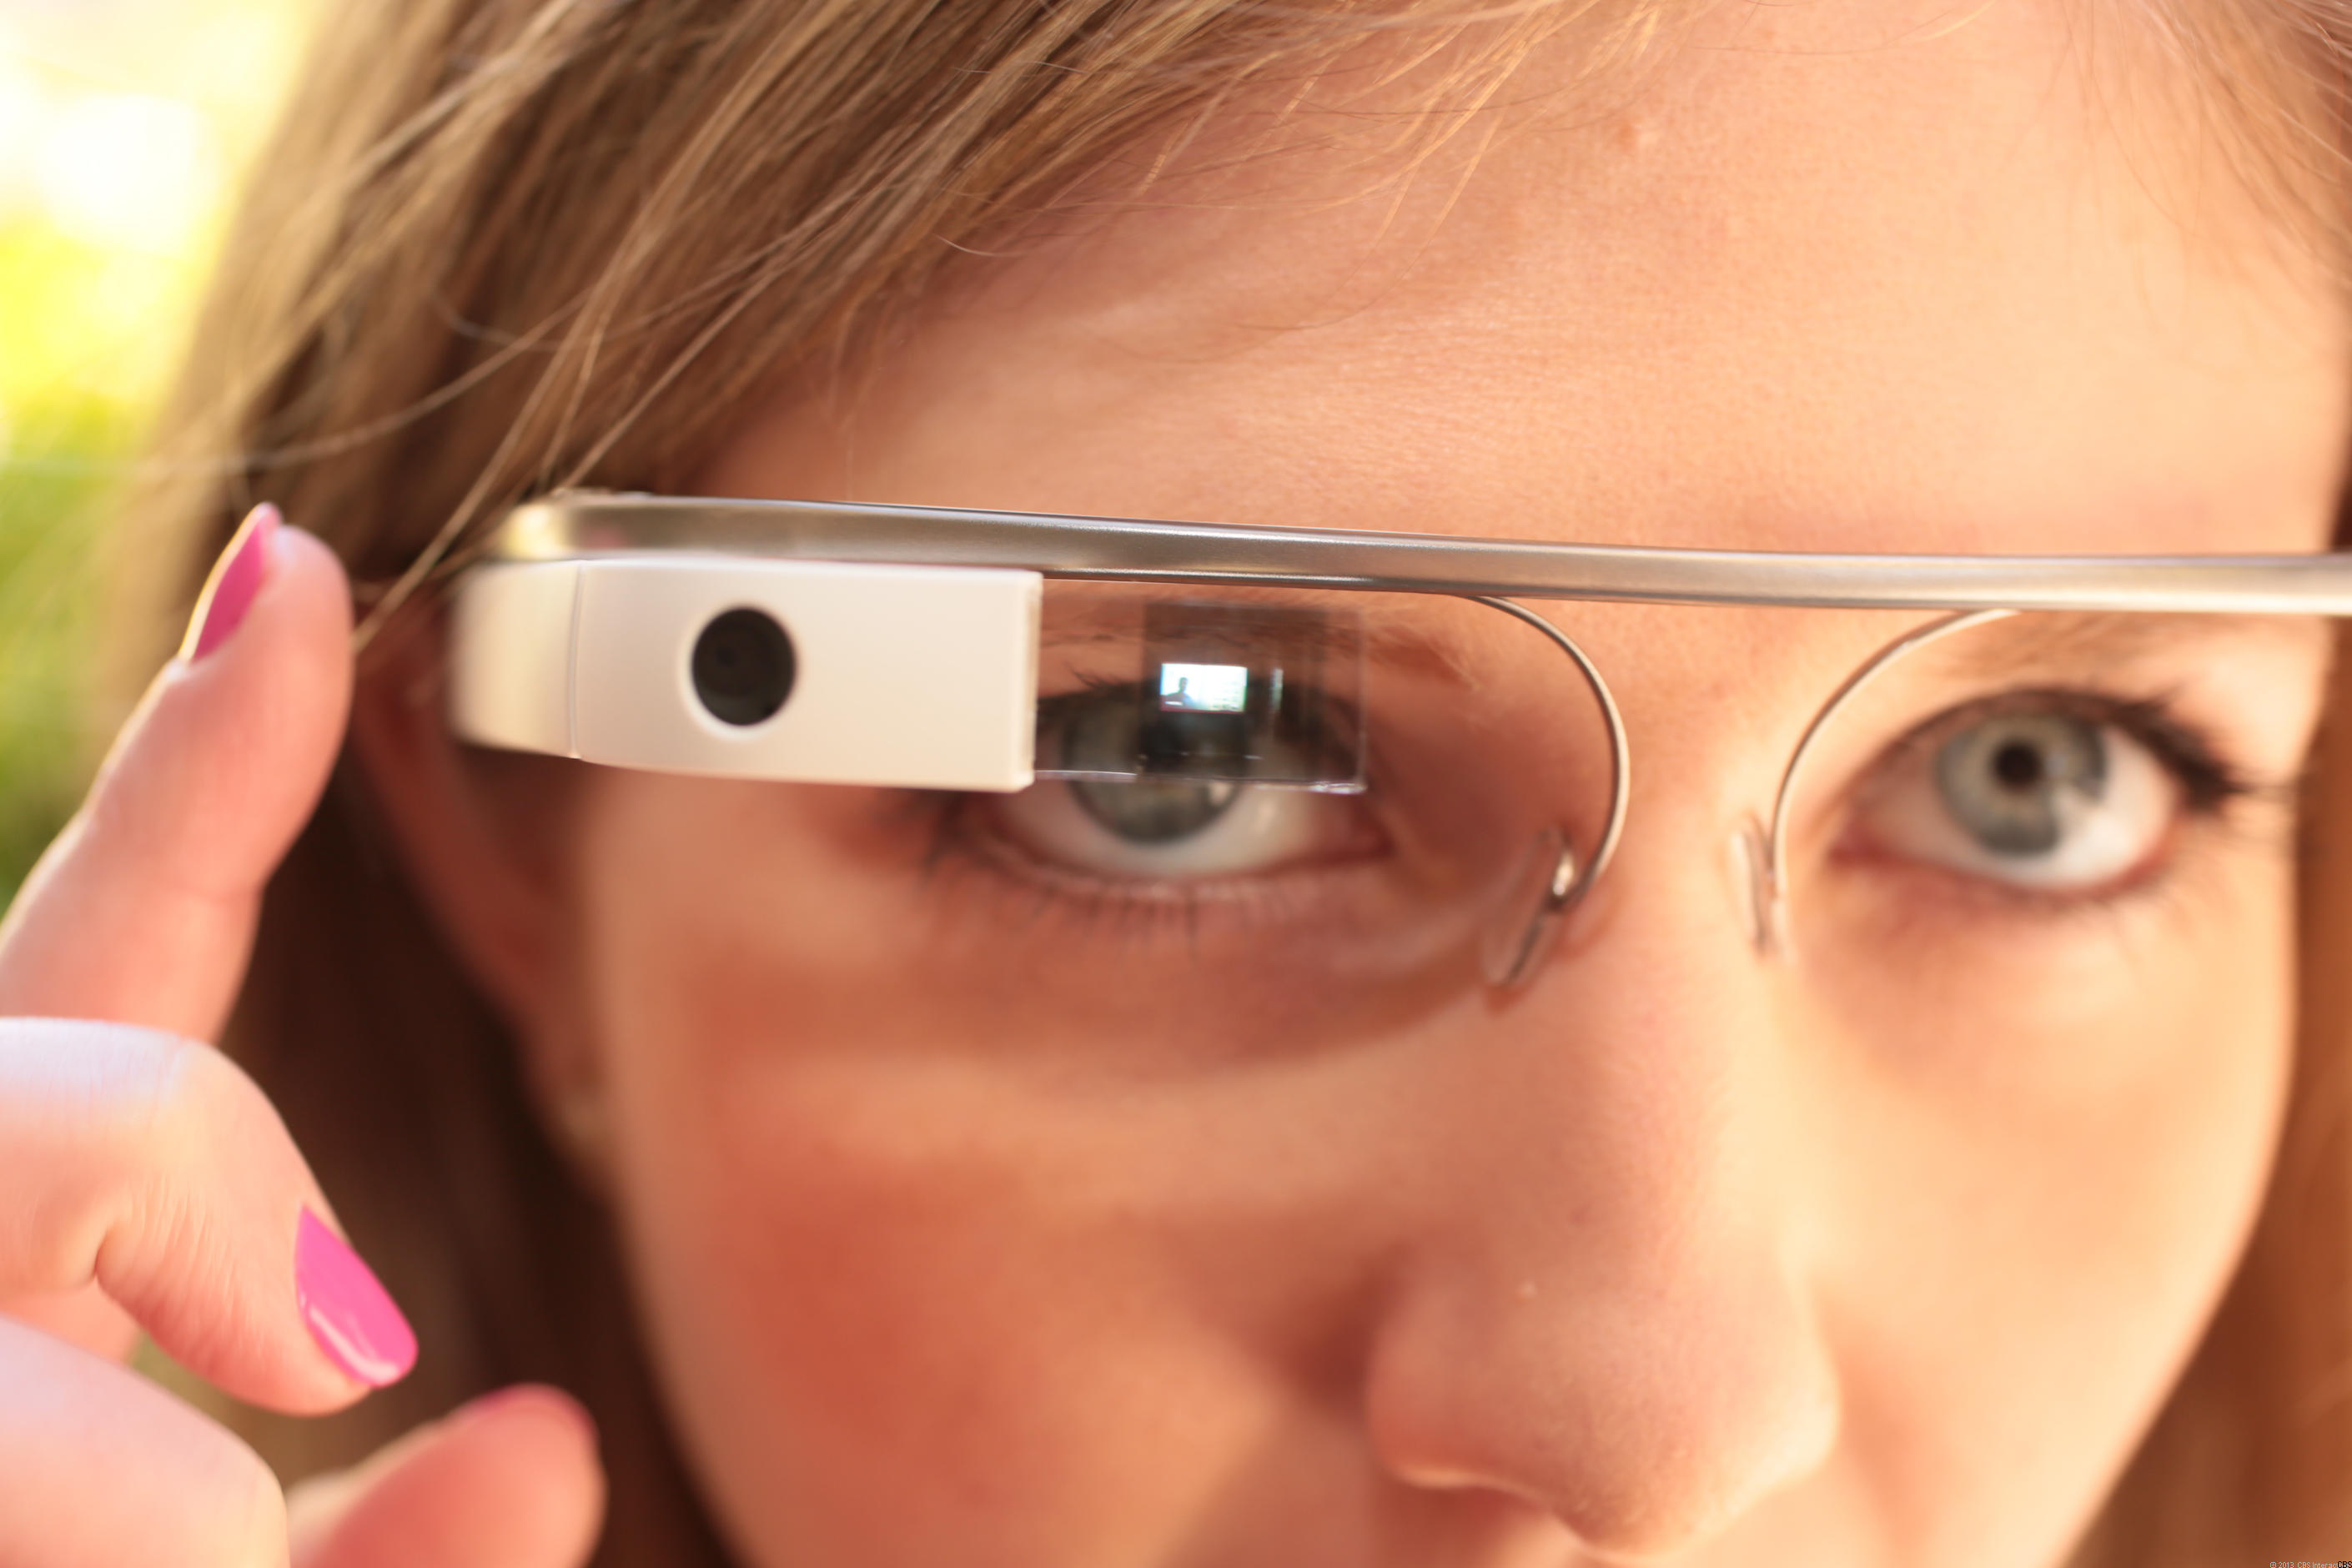 2820px x 1880px - Google Glass doesn't like cursing, U.K. public Wi-Fi porn ...